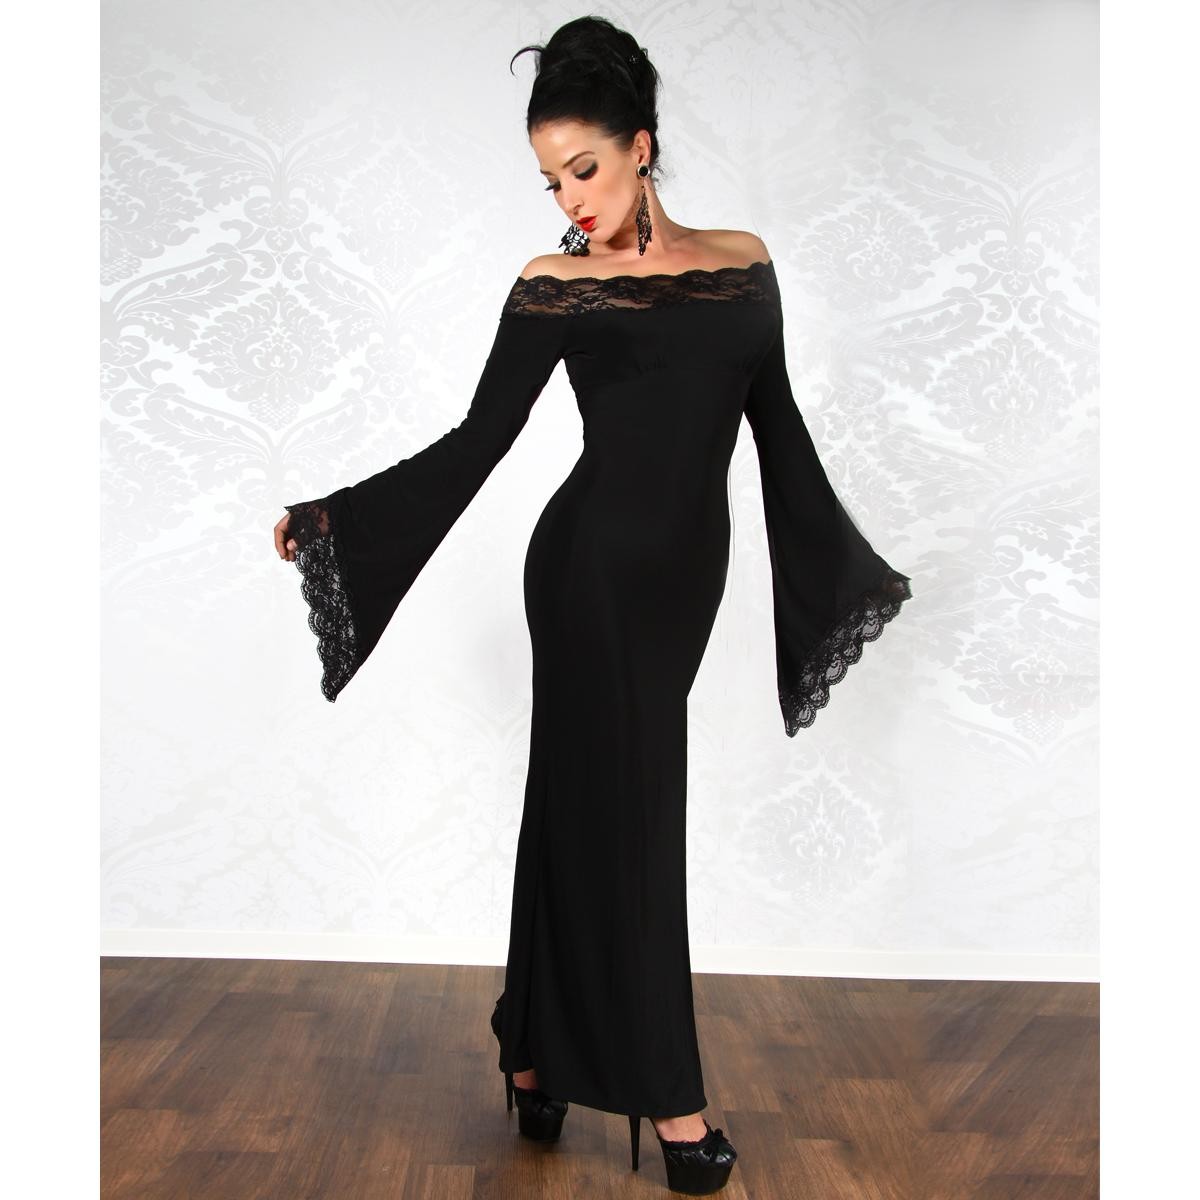  Somnia  Luna  -  Langes  Kleid  Gothic-Style  -  schwarz 